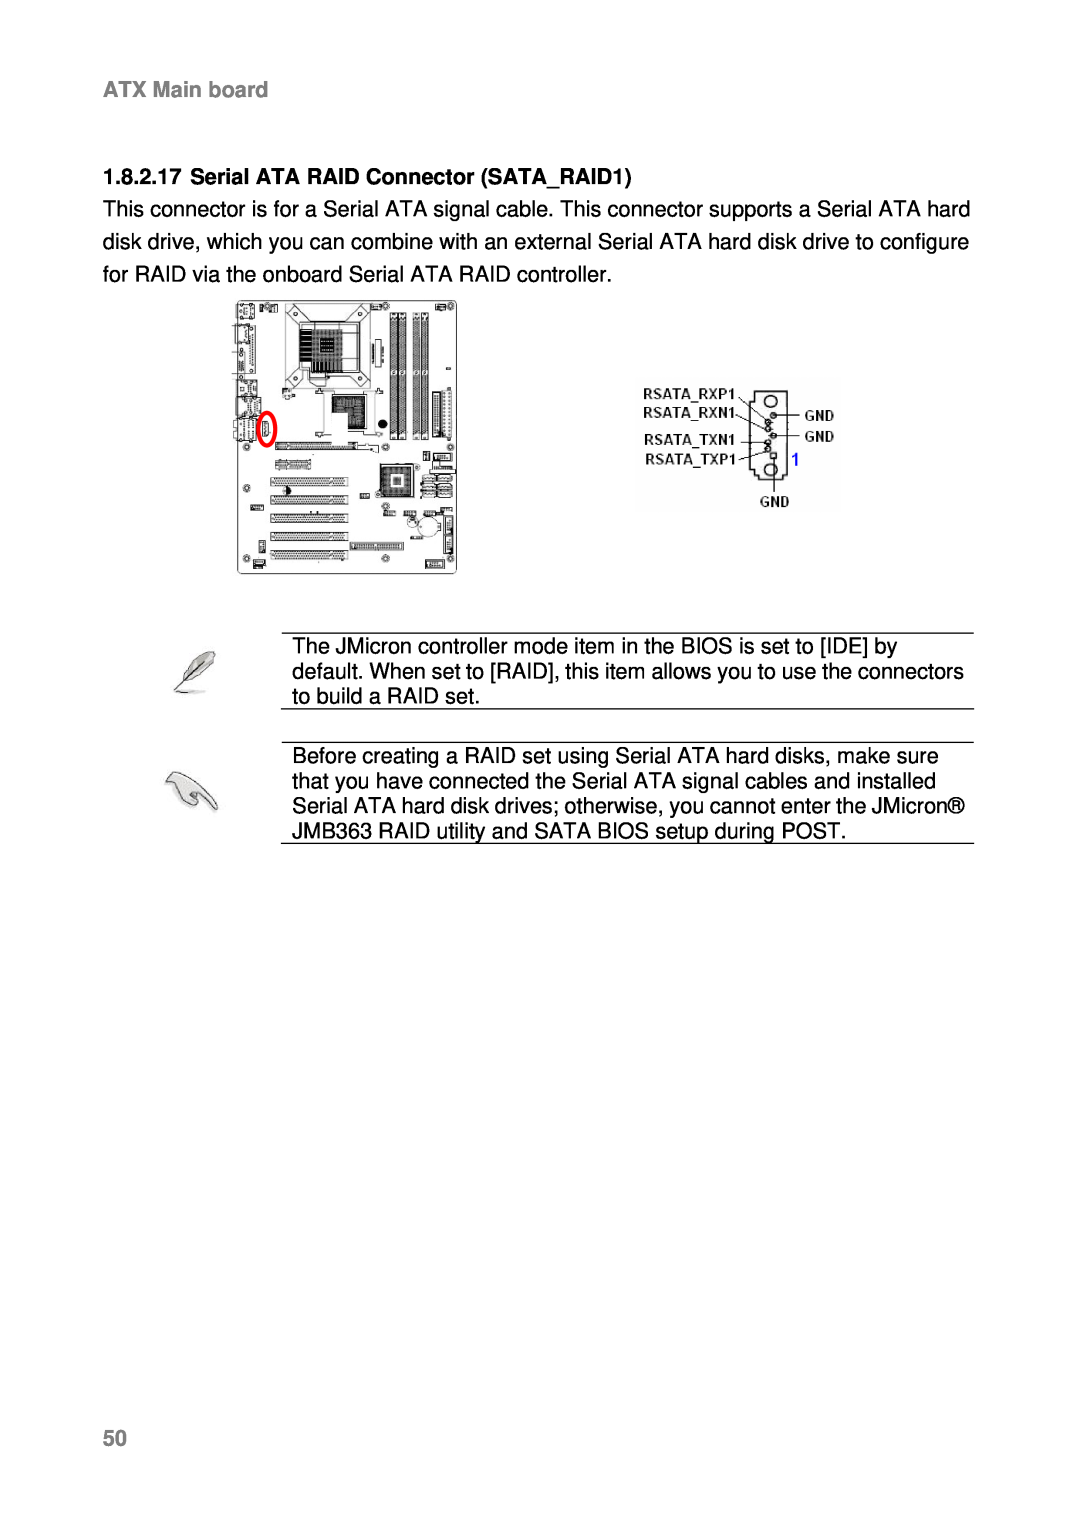 Intel AX965Q user manual Serial ATA RAID Connector SATARAID1, ATX Main board 